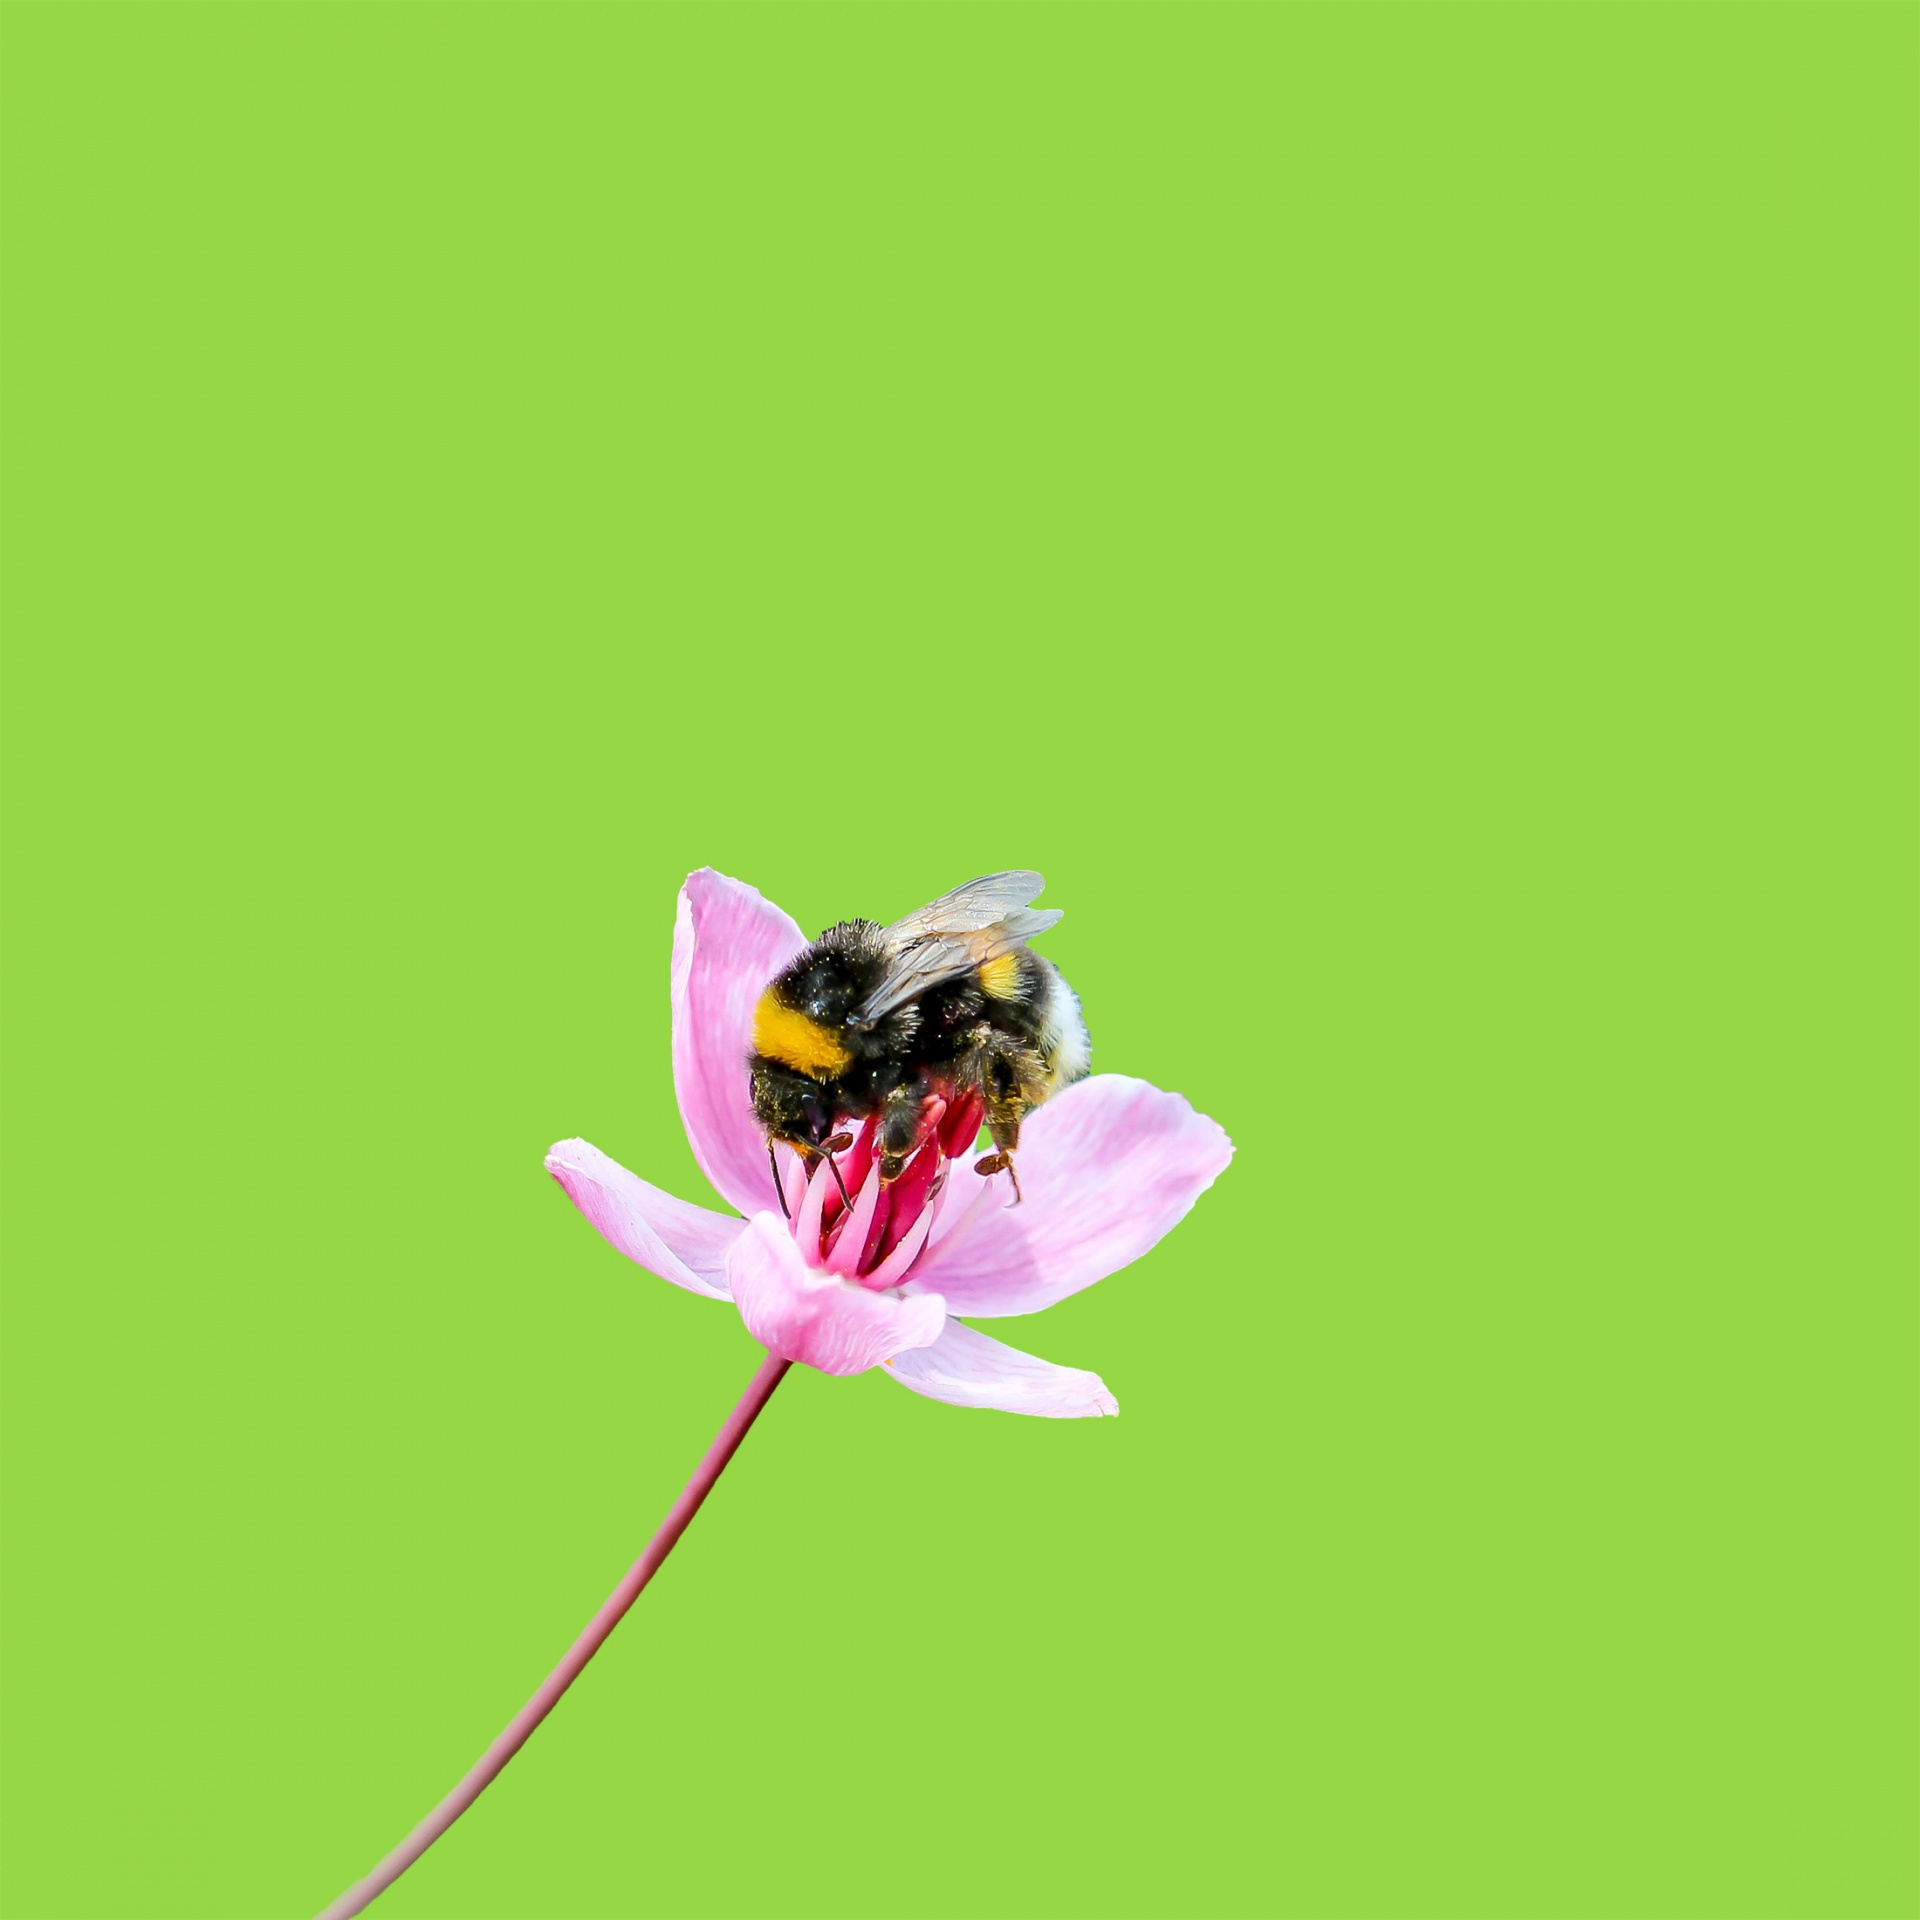 蜜蜂在粉红色的花